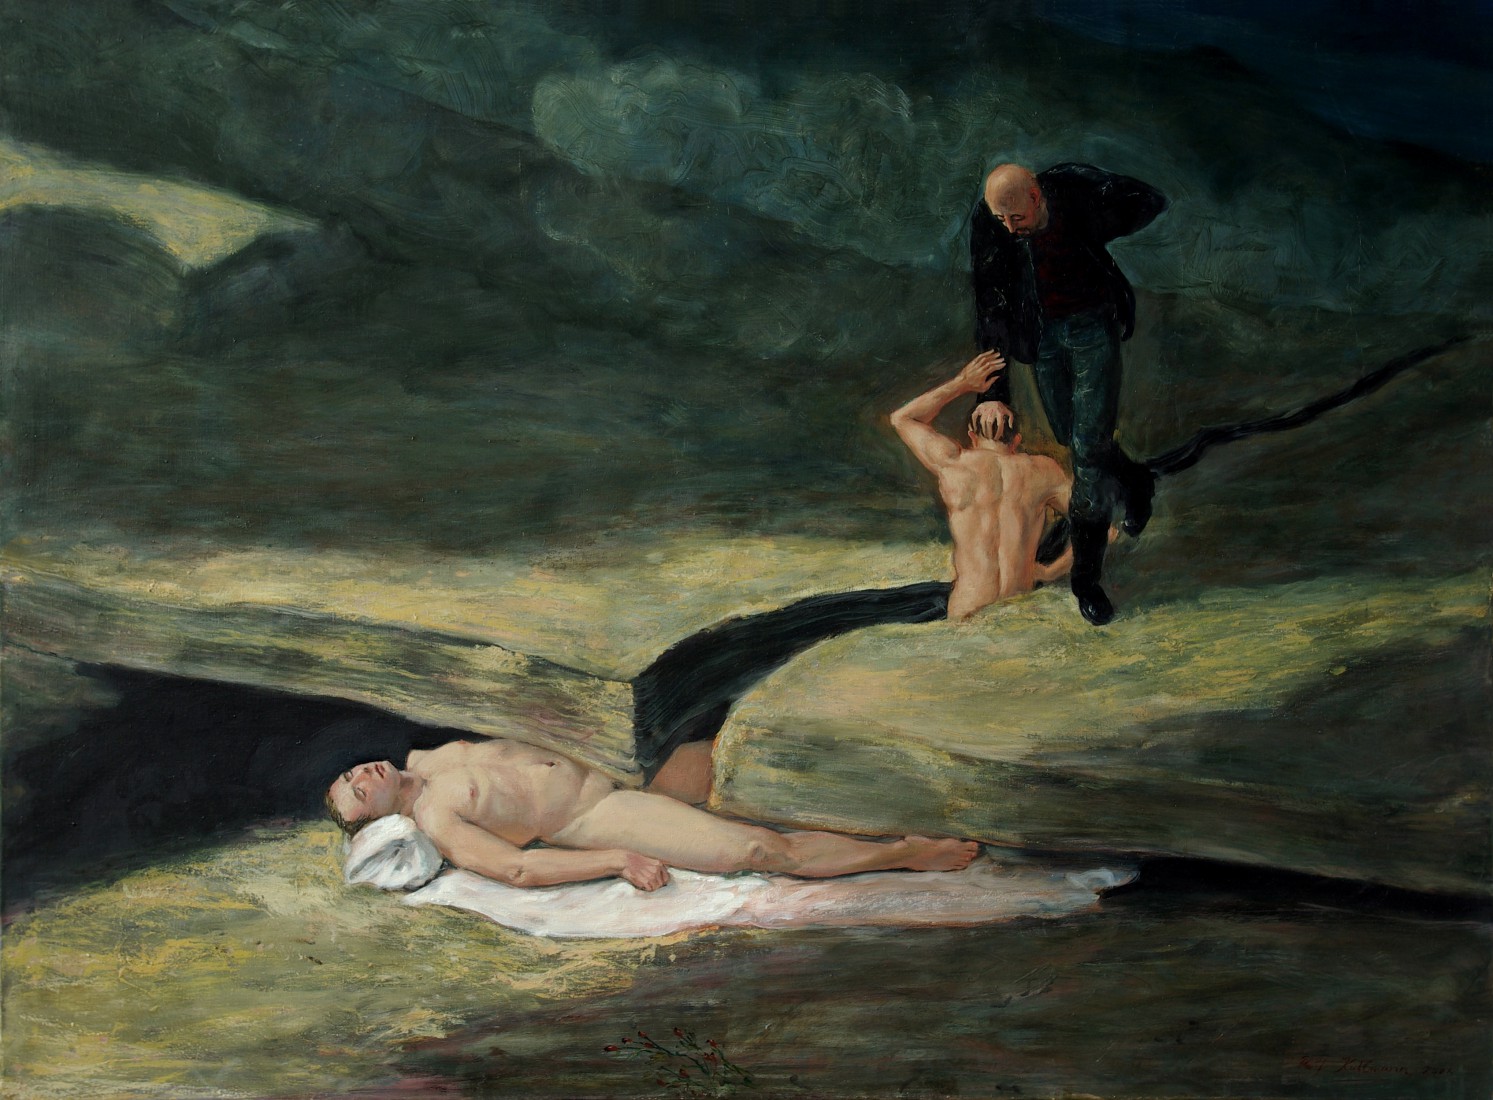 Wer wälzt uns den Stein…, 2006, mixed media auf Leinwand, 120 x 160 cm